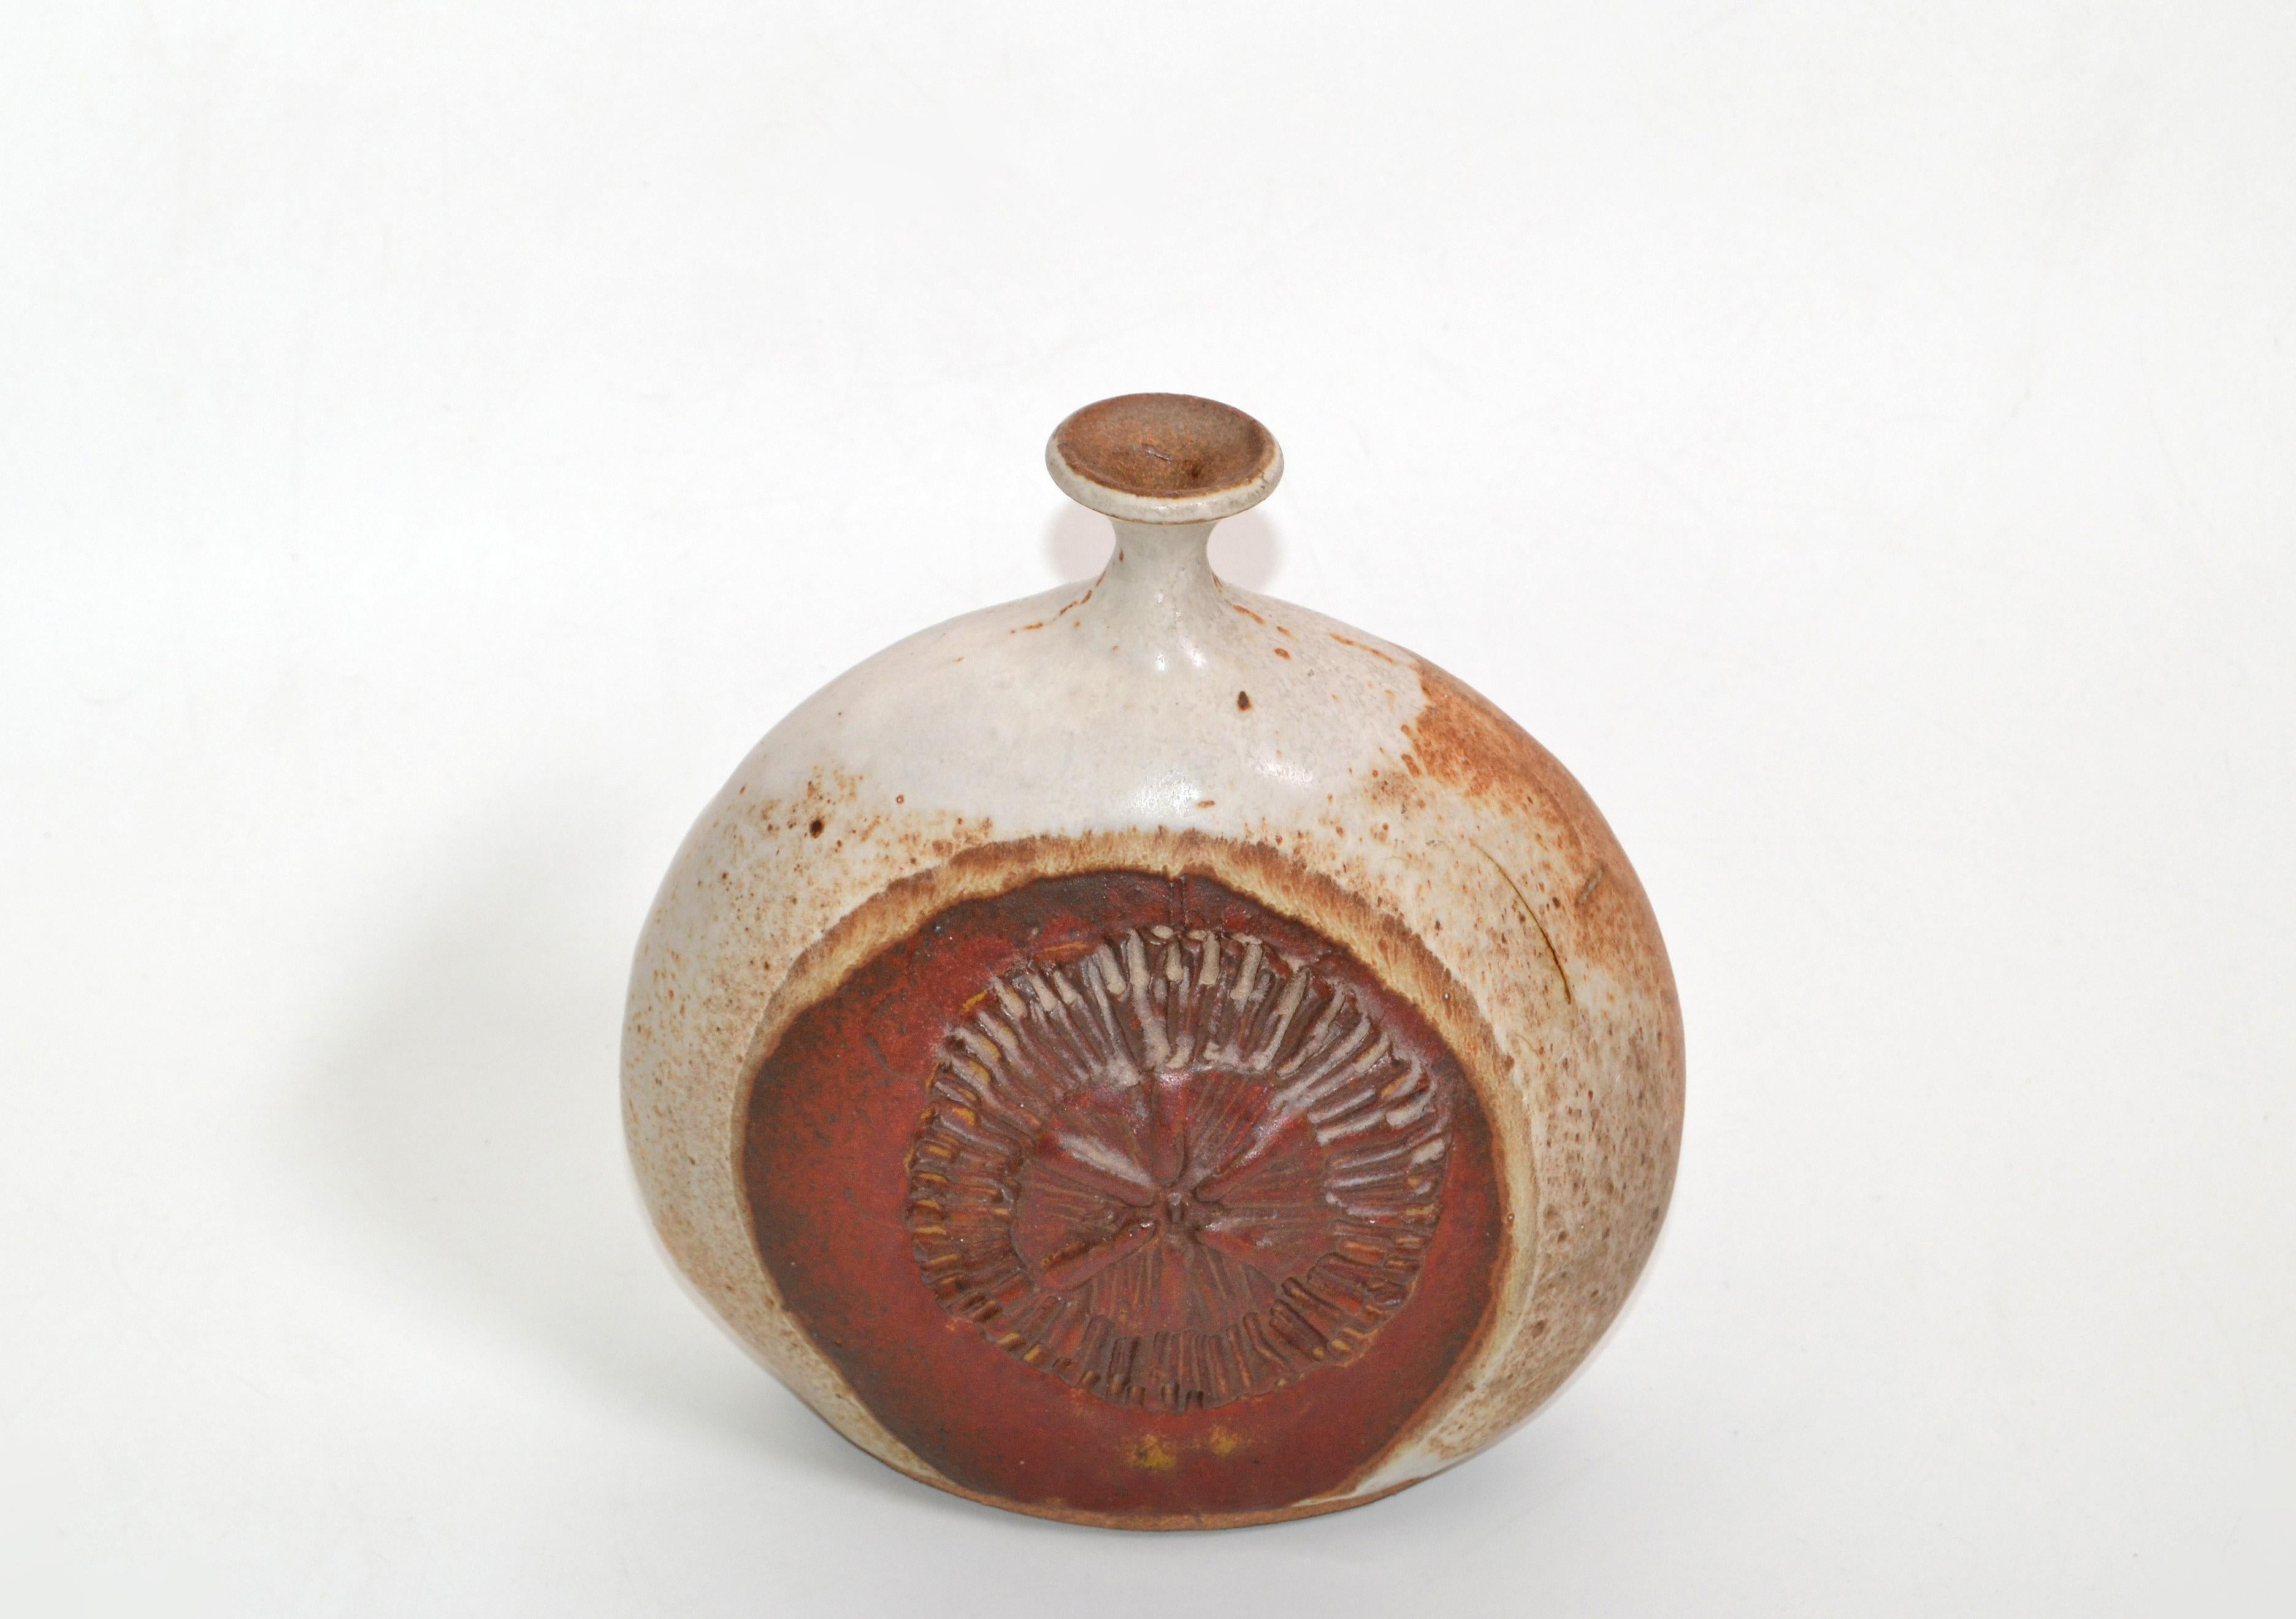 Vintage faïence artisanale marron et rouge studio piece avec glaçure drip bud ou weed Studio Piece vase, carafe, récipient.
L'art de la poterie dans un superbe artisanat.